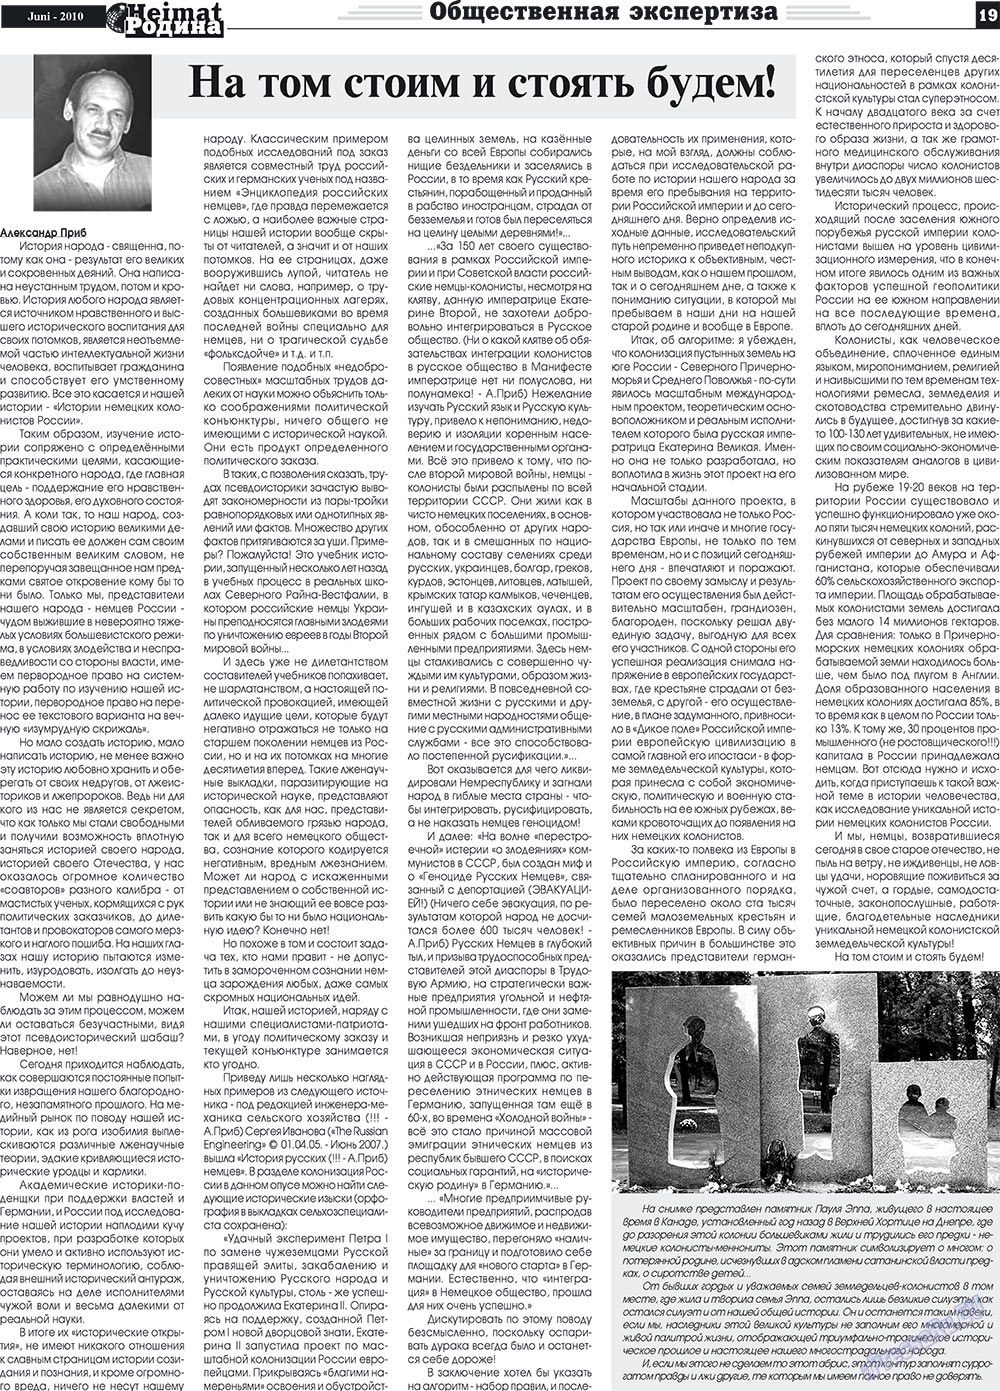 Heimat-Родина (газета). 2010 год, номер 6, стр. 19